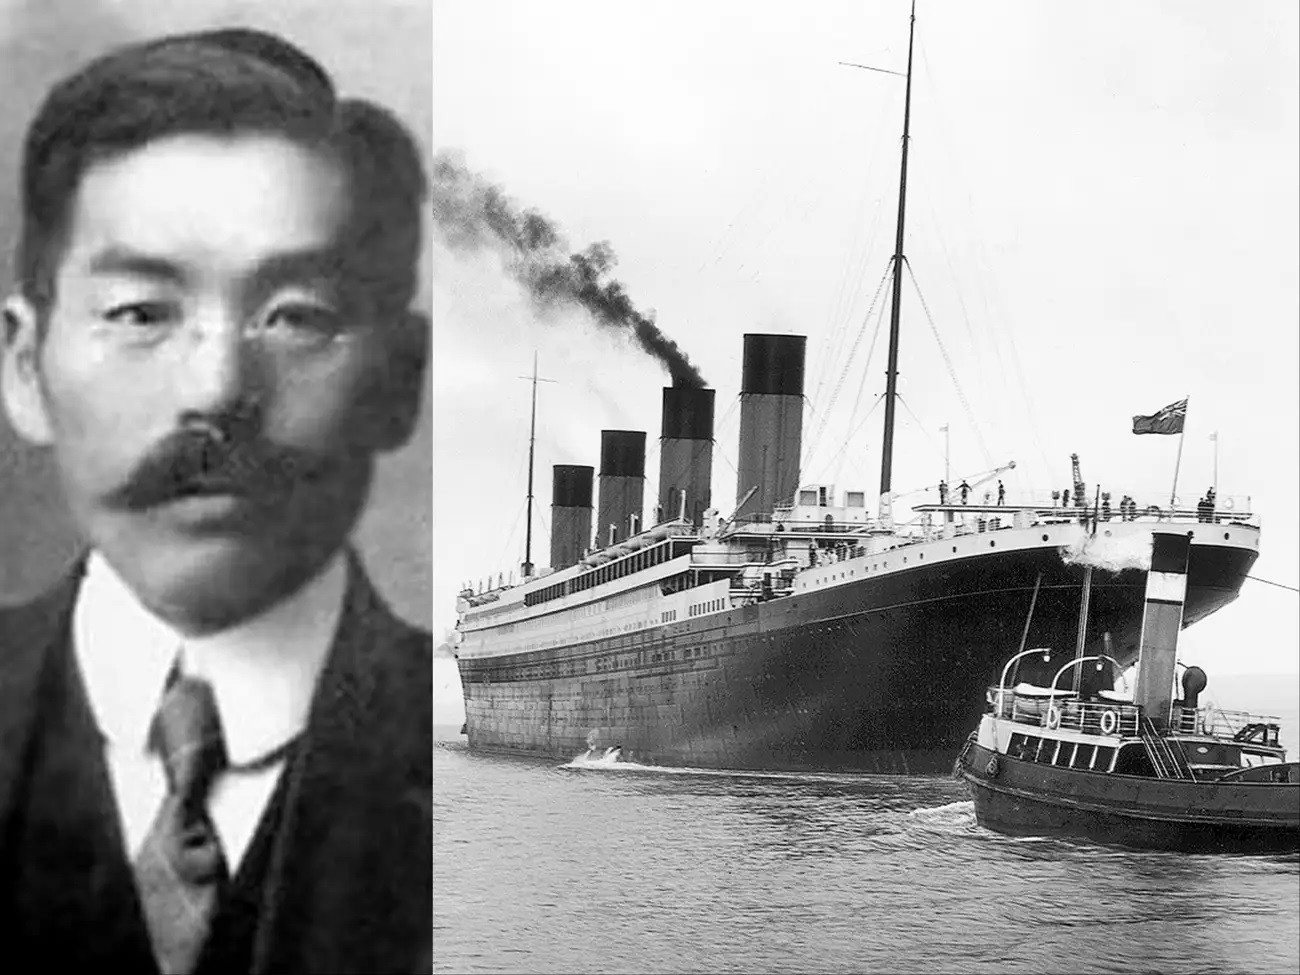 Sống sót sau thảm họa Titanic, người đàn ông bị cả nước Nhật ghét bỏ - 1